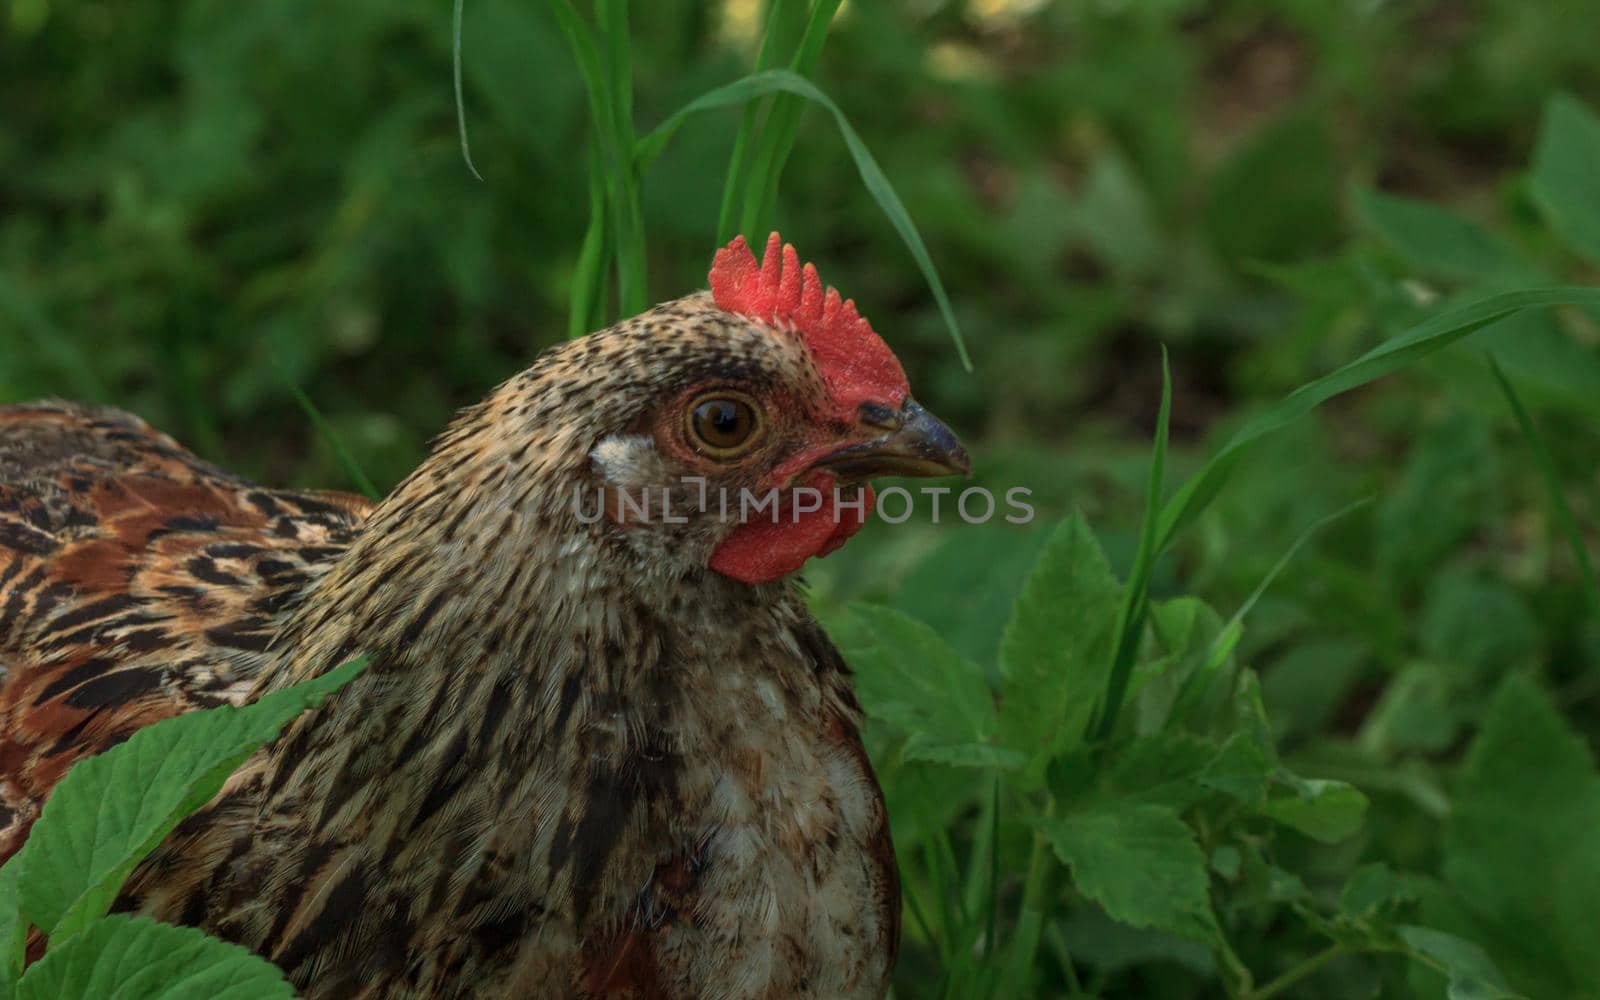 Wild farm variegated chicken bird in grass by scudrinja